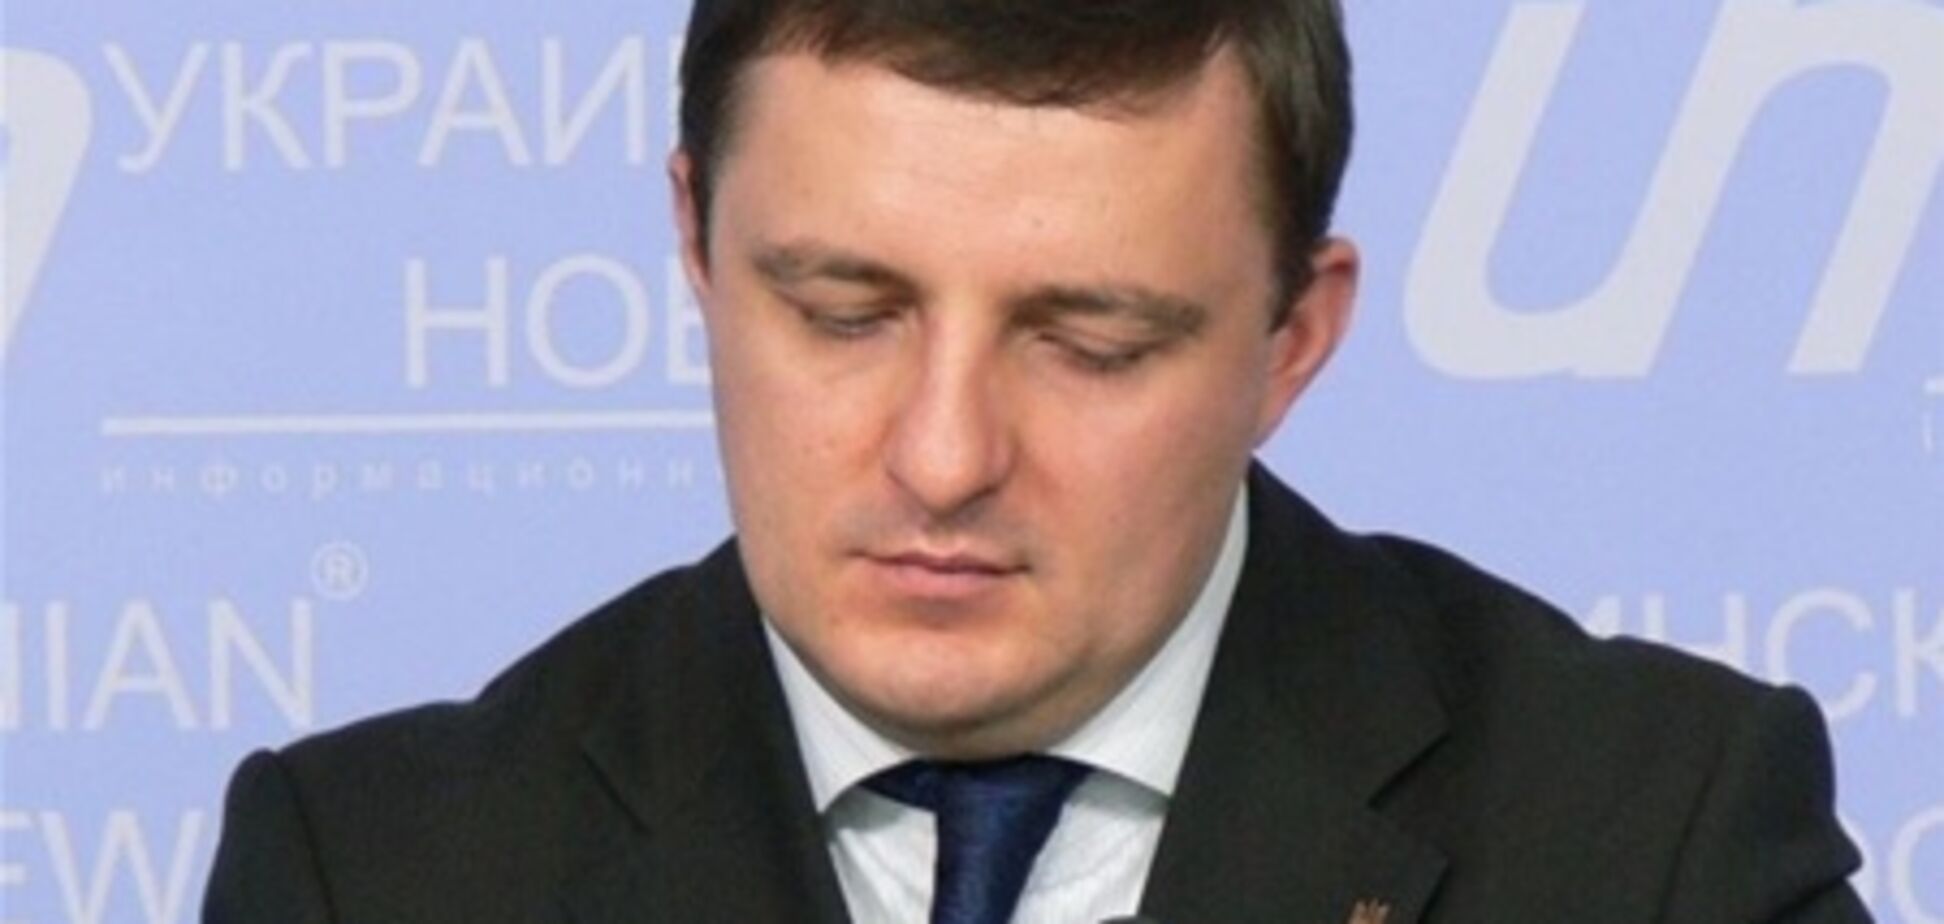 Купчак заявив, що Яценюк погрожував йому фізичною розправою